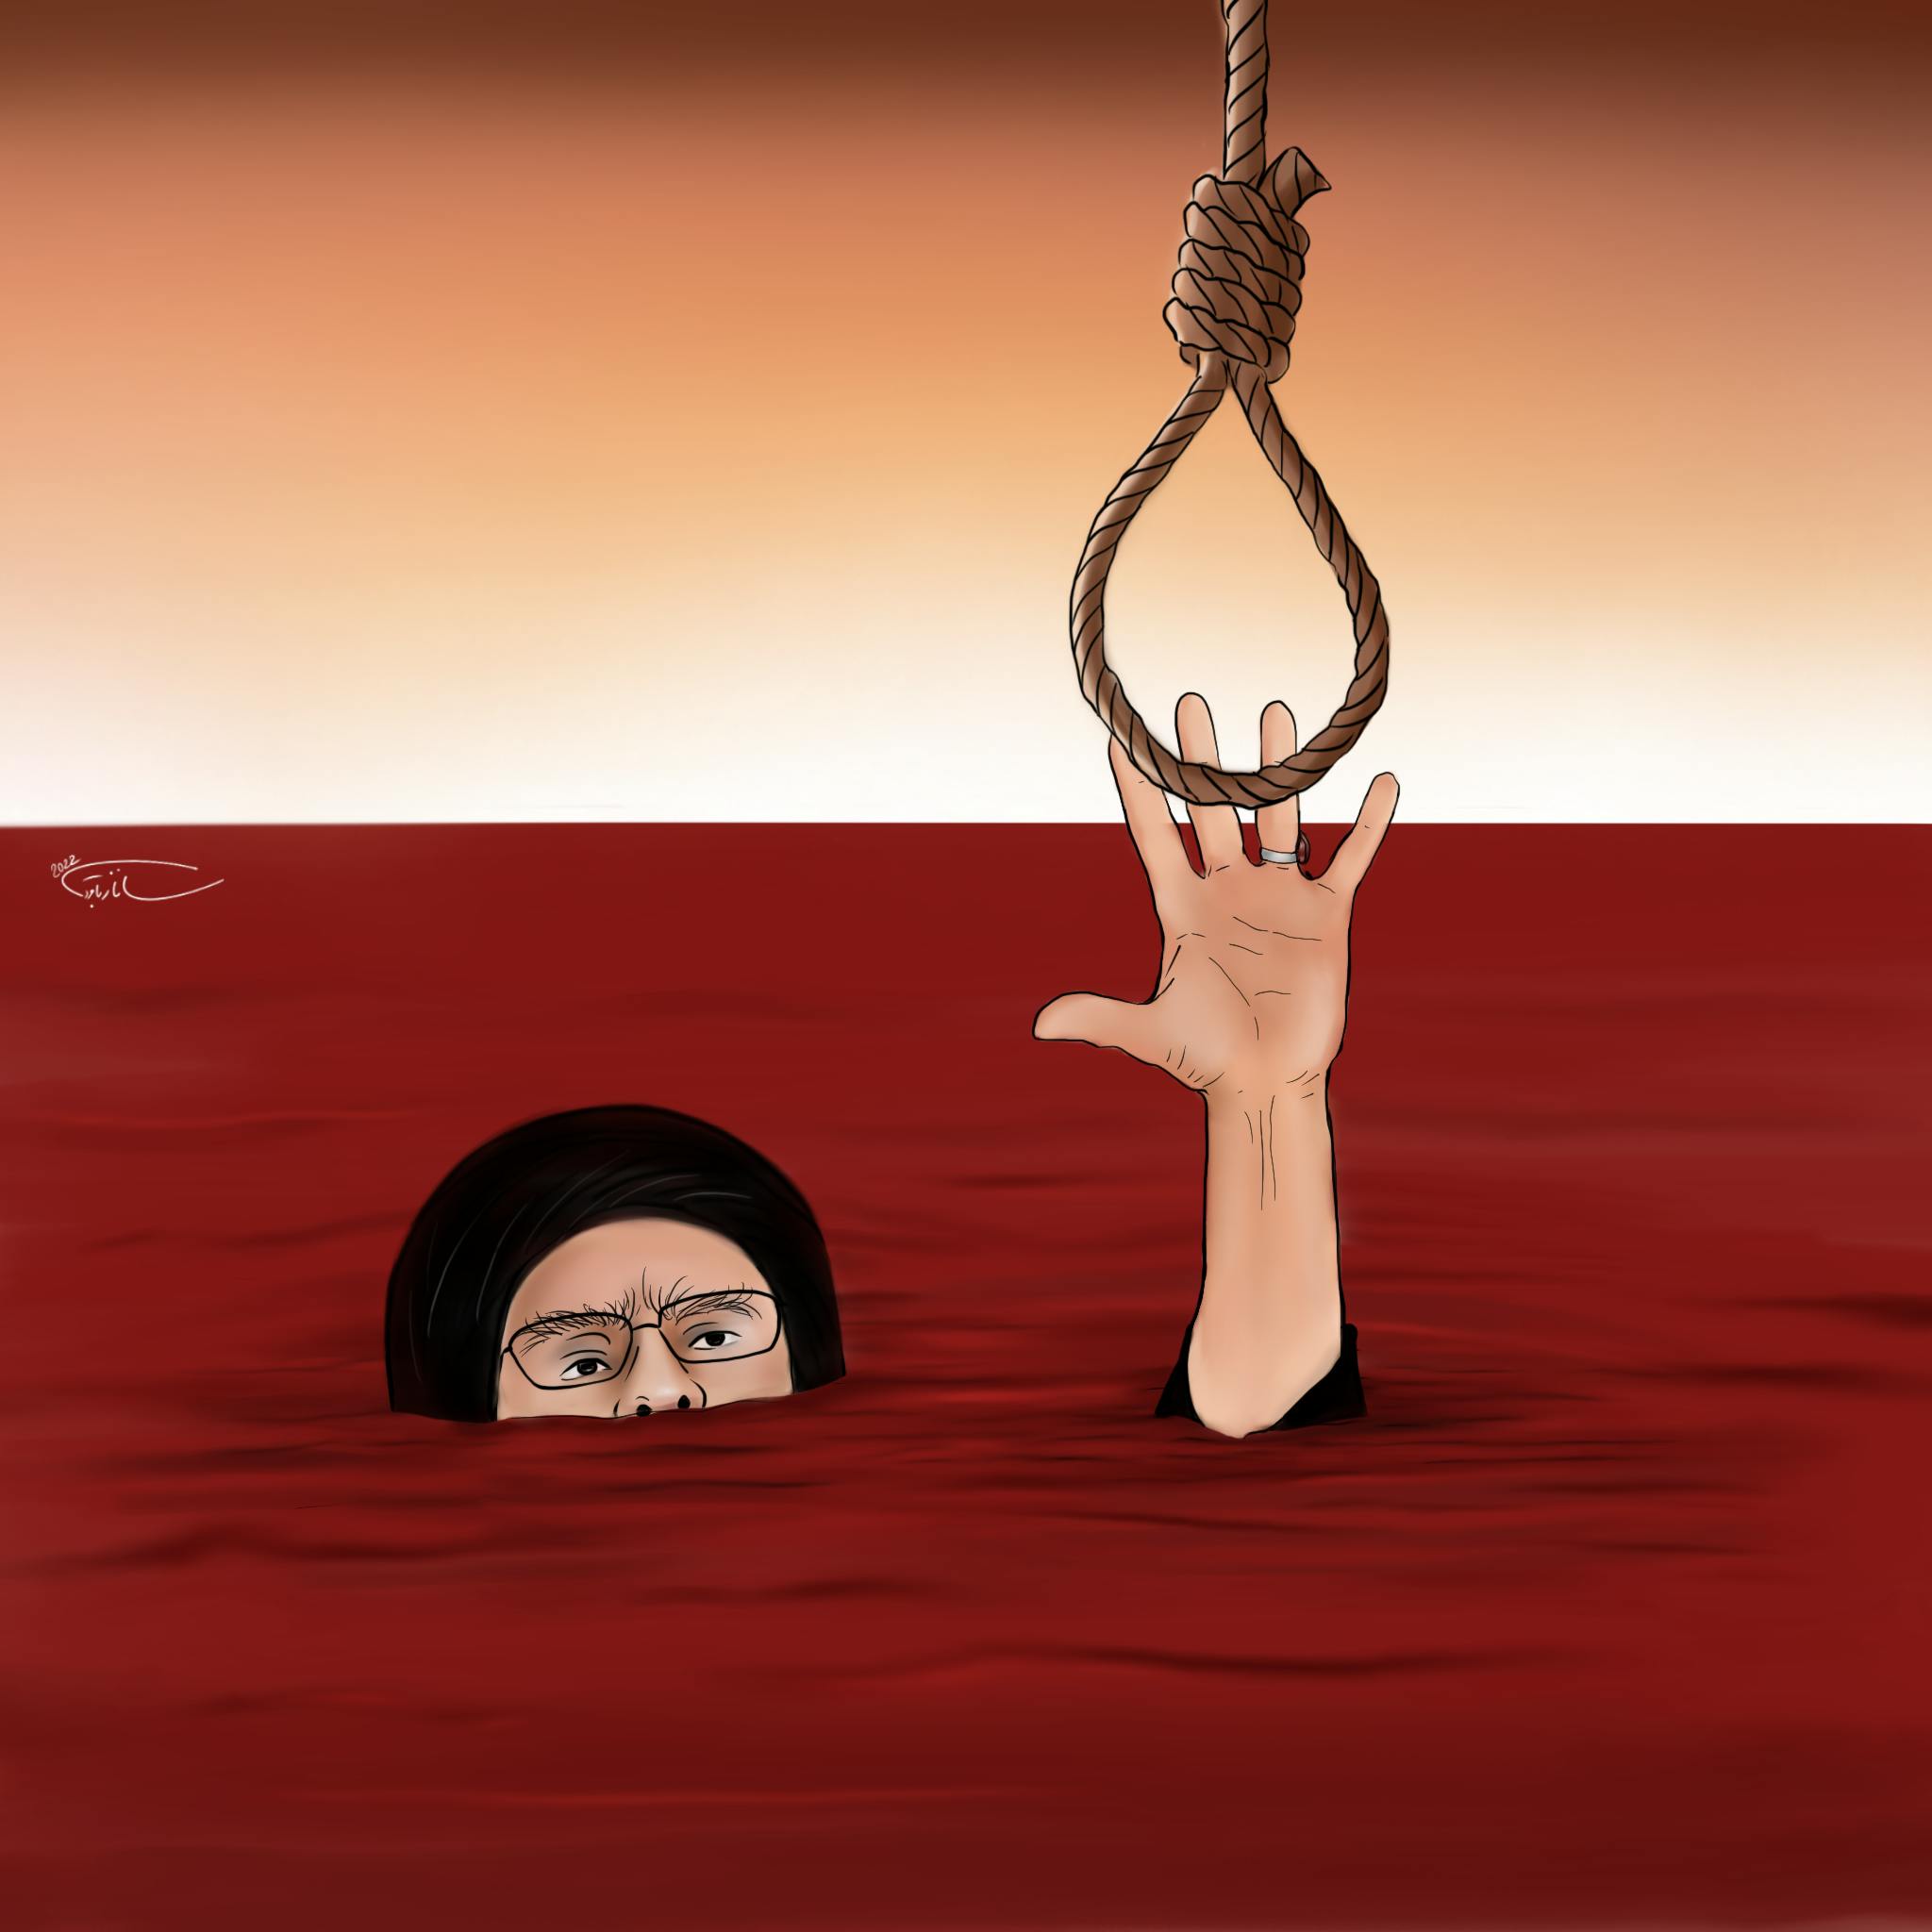 خامنه‌ای در حال غرق شدن در خون تلاش دارد به طناب دار برای نجات خود چنگ بزند.